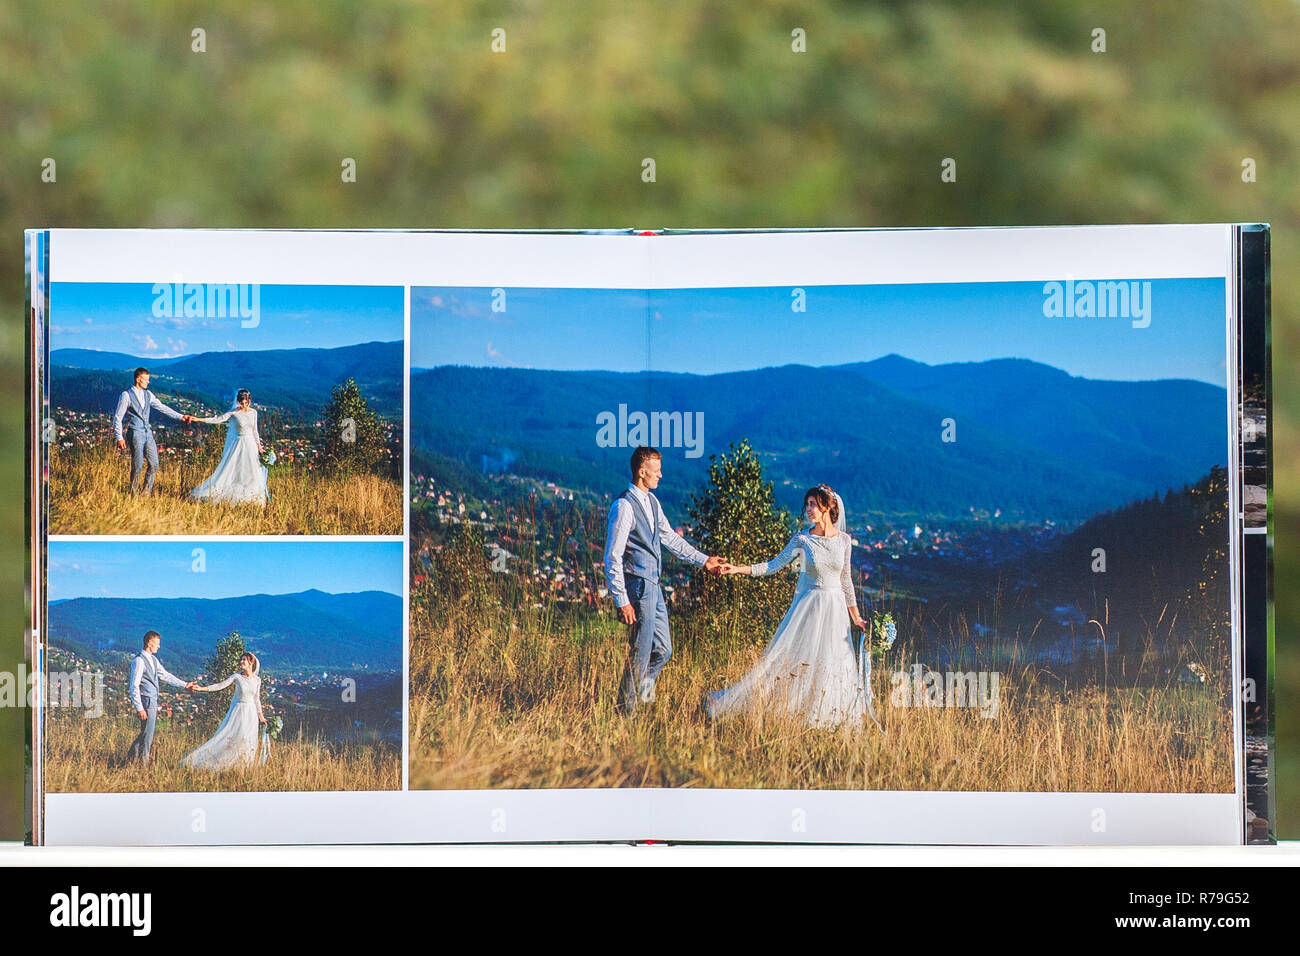 Trang sách ảnh cưới hoặc album cưới trên nền xanh lam thạch là những lựa chọn tuyệt vời cho những ai yêu thích sự đơn giản và thanh lịch. Những bức ảnh trong trang sách hay album này được chụp trên nền đất xanh tươi để tạo nên những khoảnh khắc đầy sống động và độc đáo.